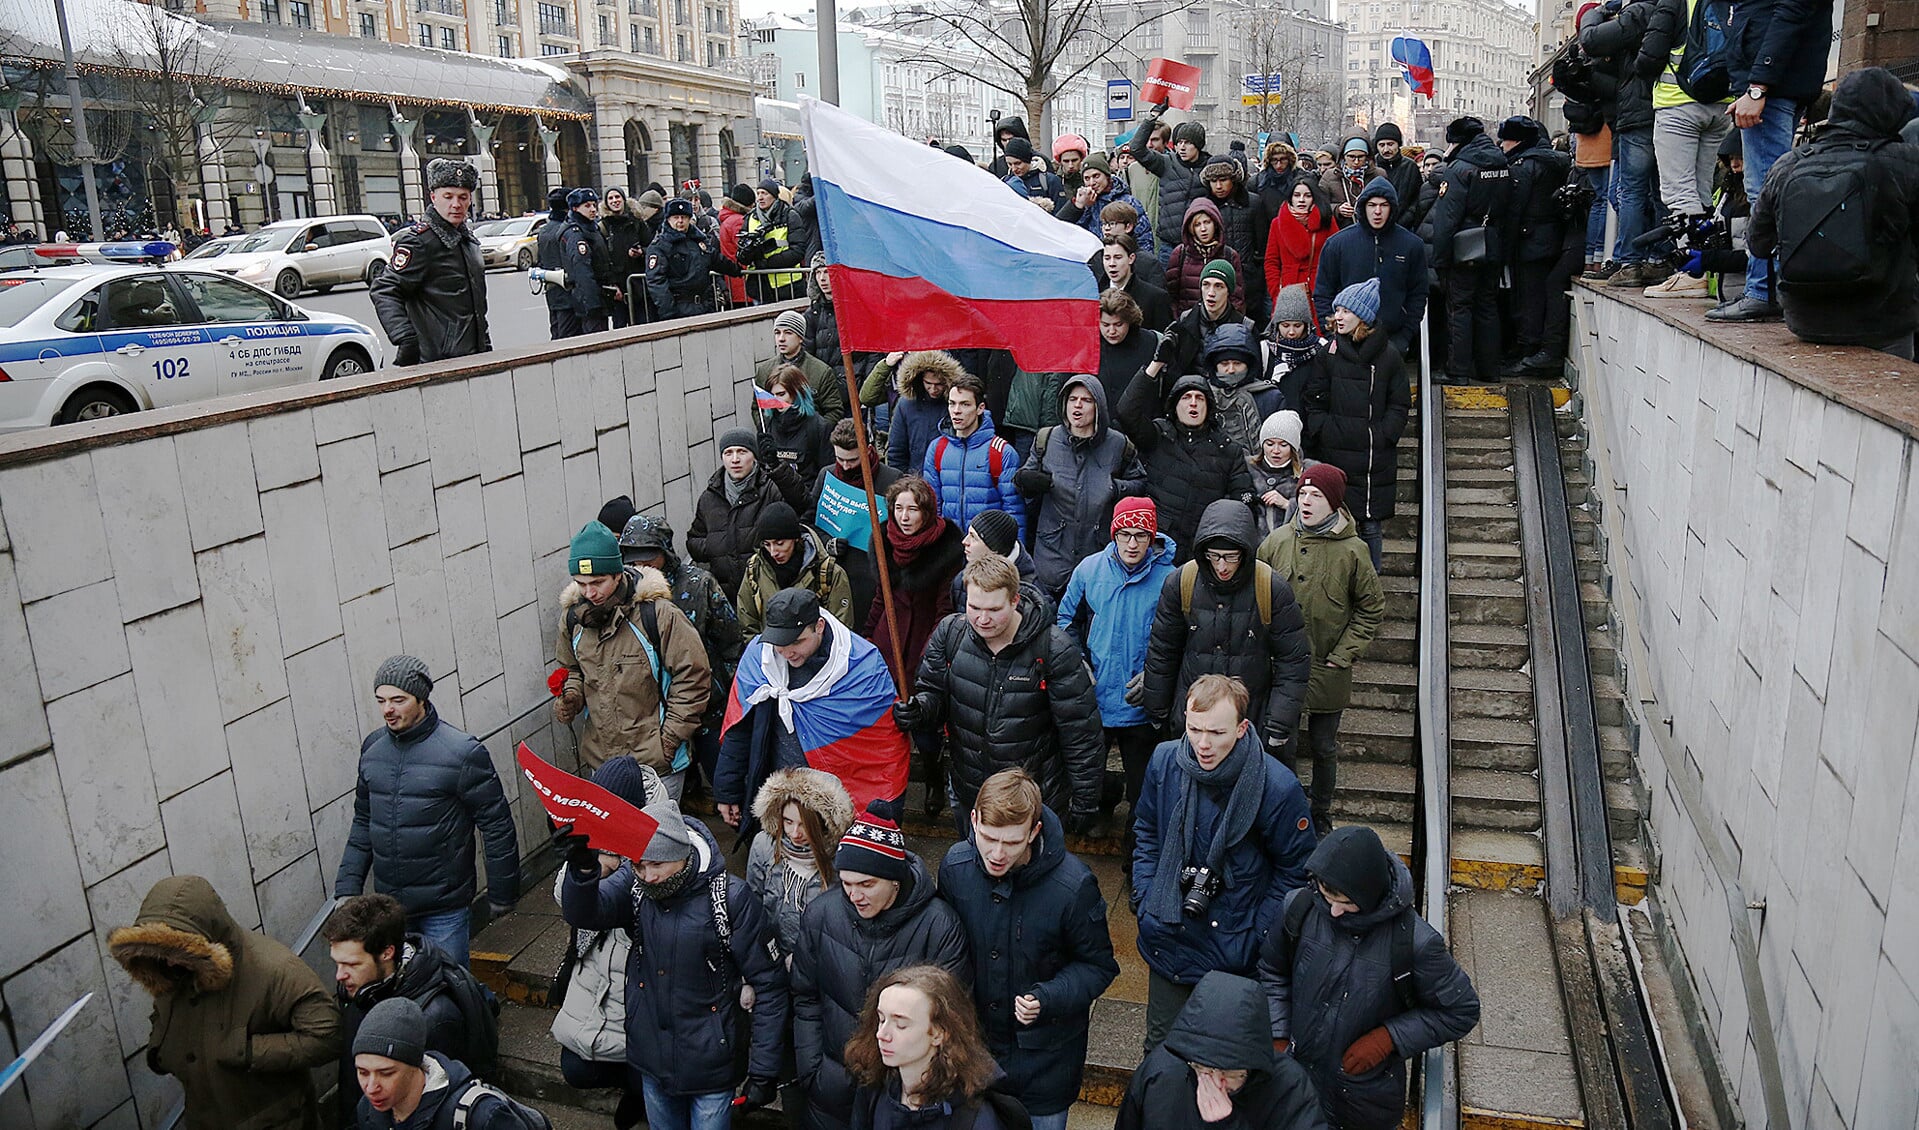 Er waren wel protesten tegen de voorspelbare presidentsverkiezingen in Rusland vorige maand. Maar groeiende middengroepen en mondige jongeren hebben geen instituten om in te wortelen. Rusland is een kaartenhuis, dat net als de Sovejtunie ineen kan storten.